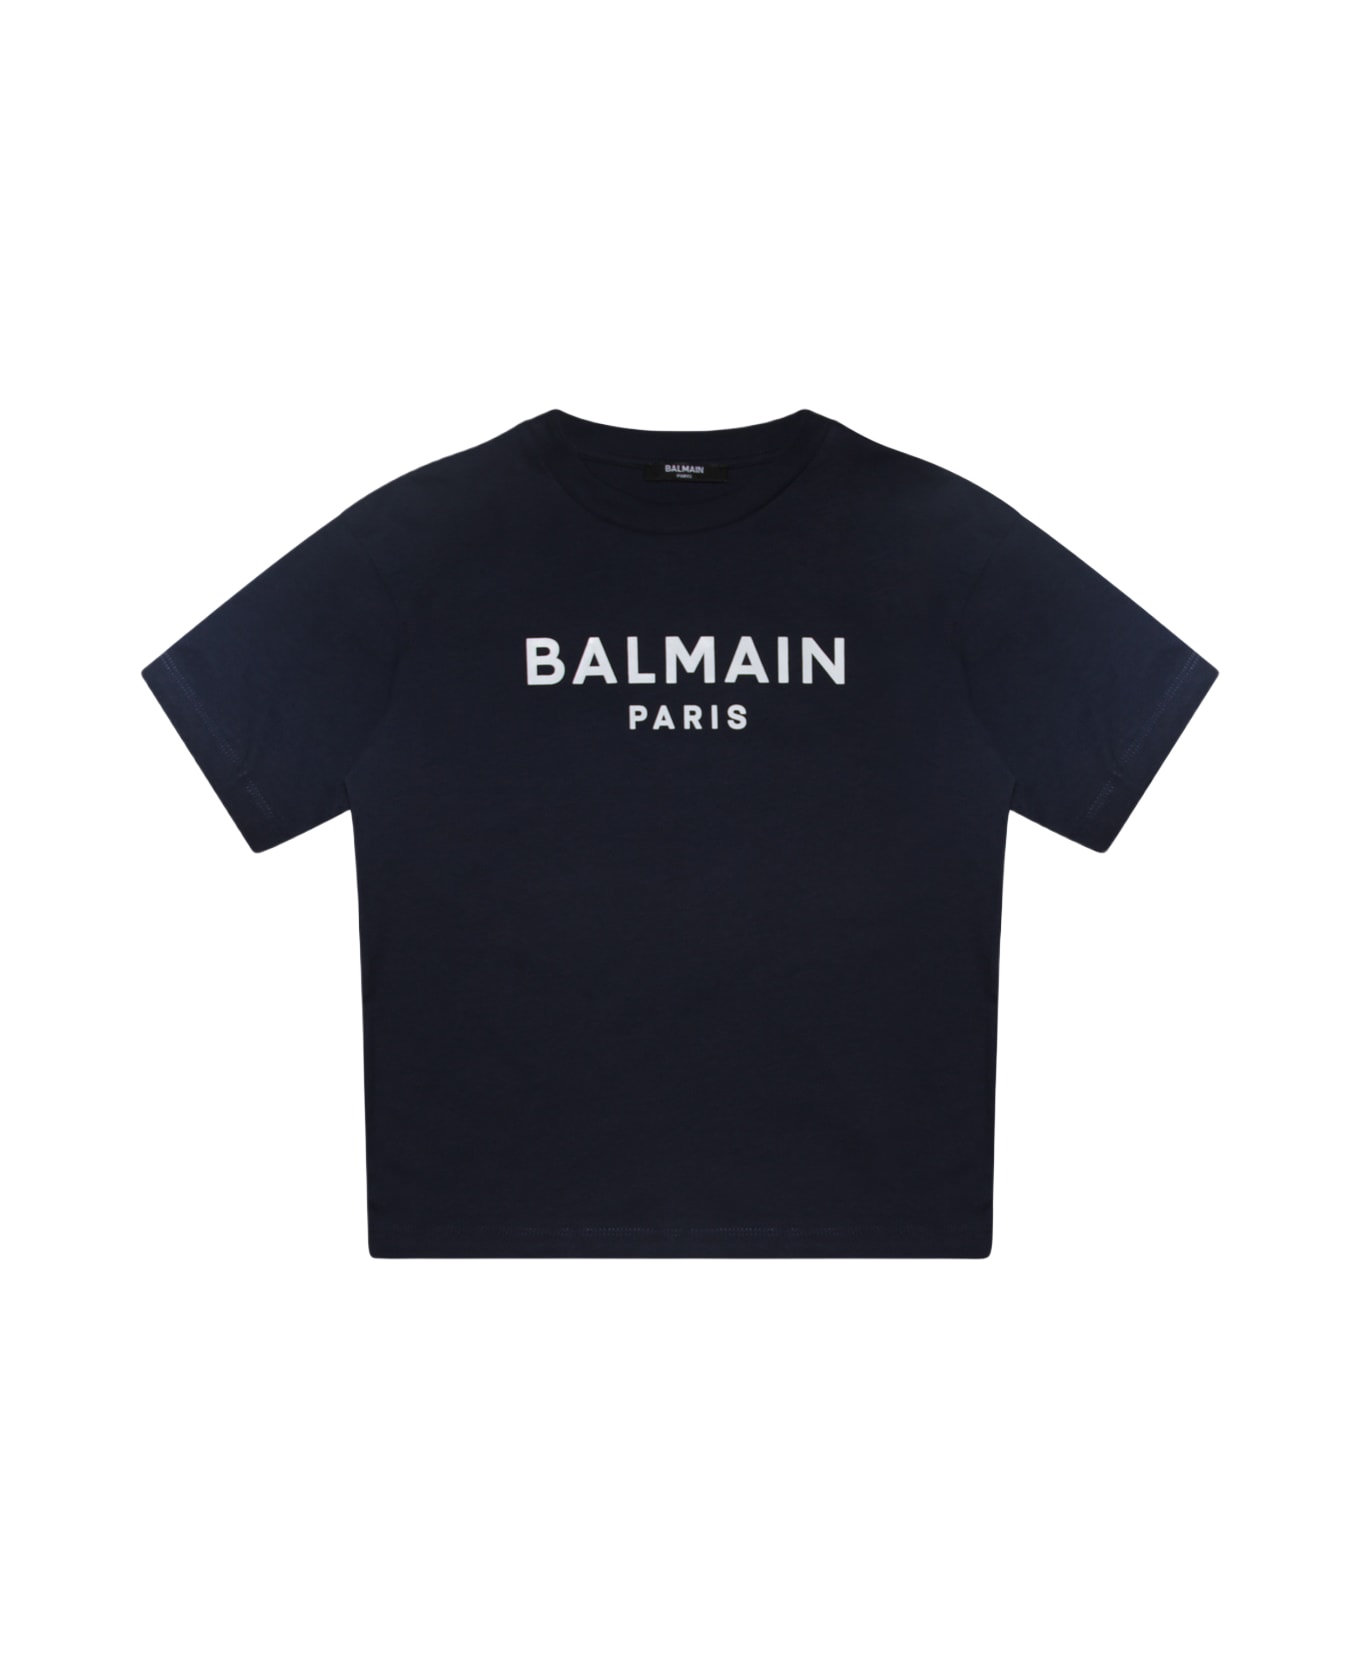 Balmain Navy Blue And White Cotton T-shirt - AIR FORCE BLUE